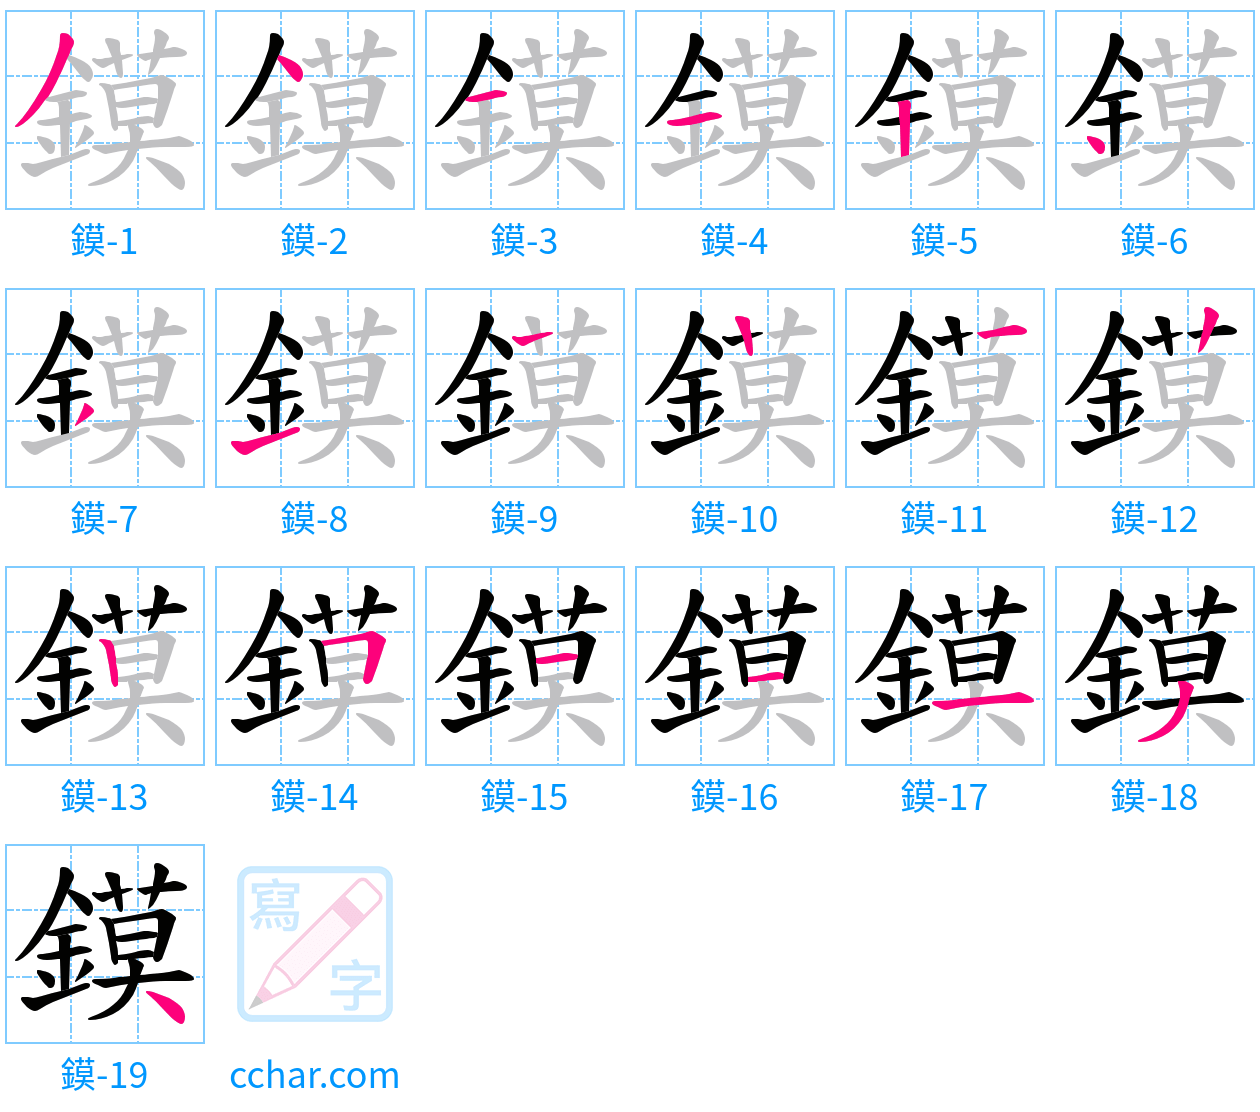 鏌 stroke order step-by-step diagram